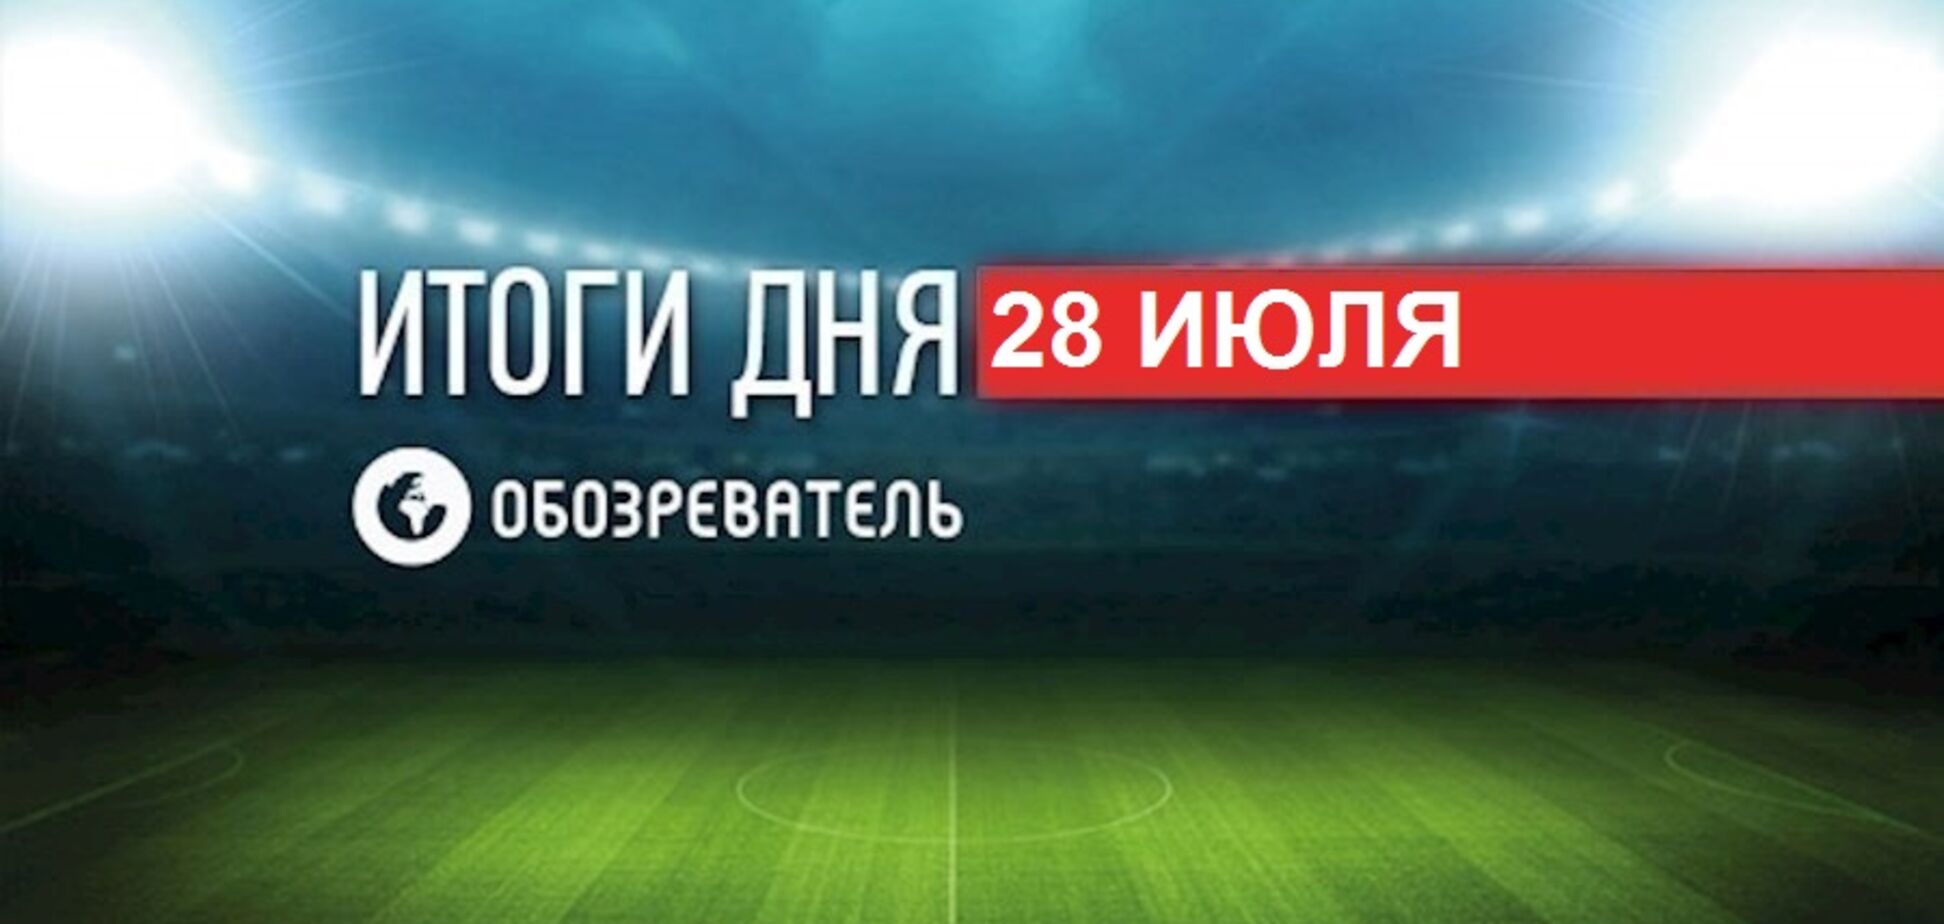 Навколо збірної Росії з футболу спалахнув гучний скандал: спортивні підсумки 28 липня